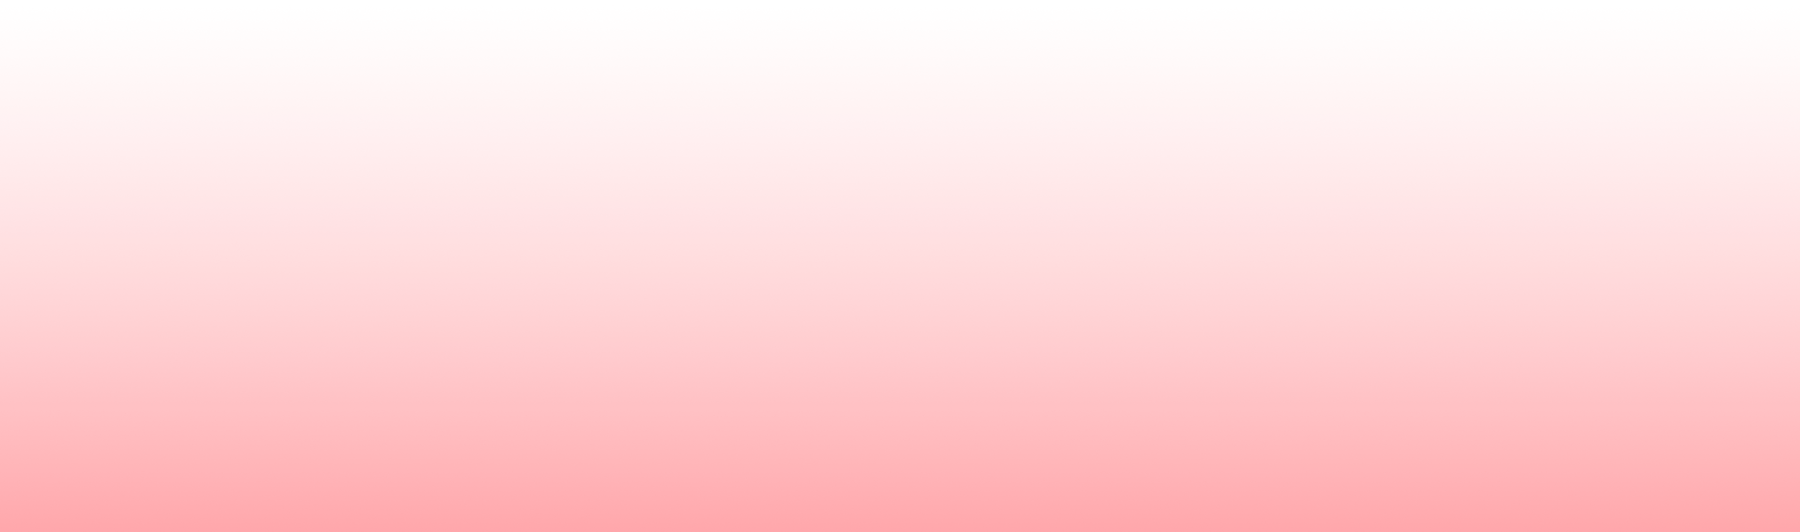 Red Transparent gradient fades